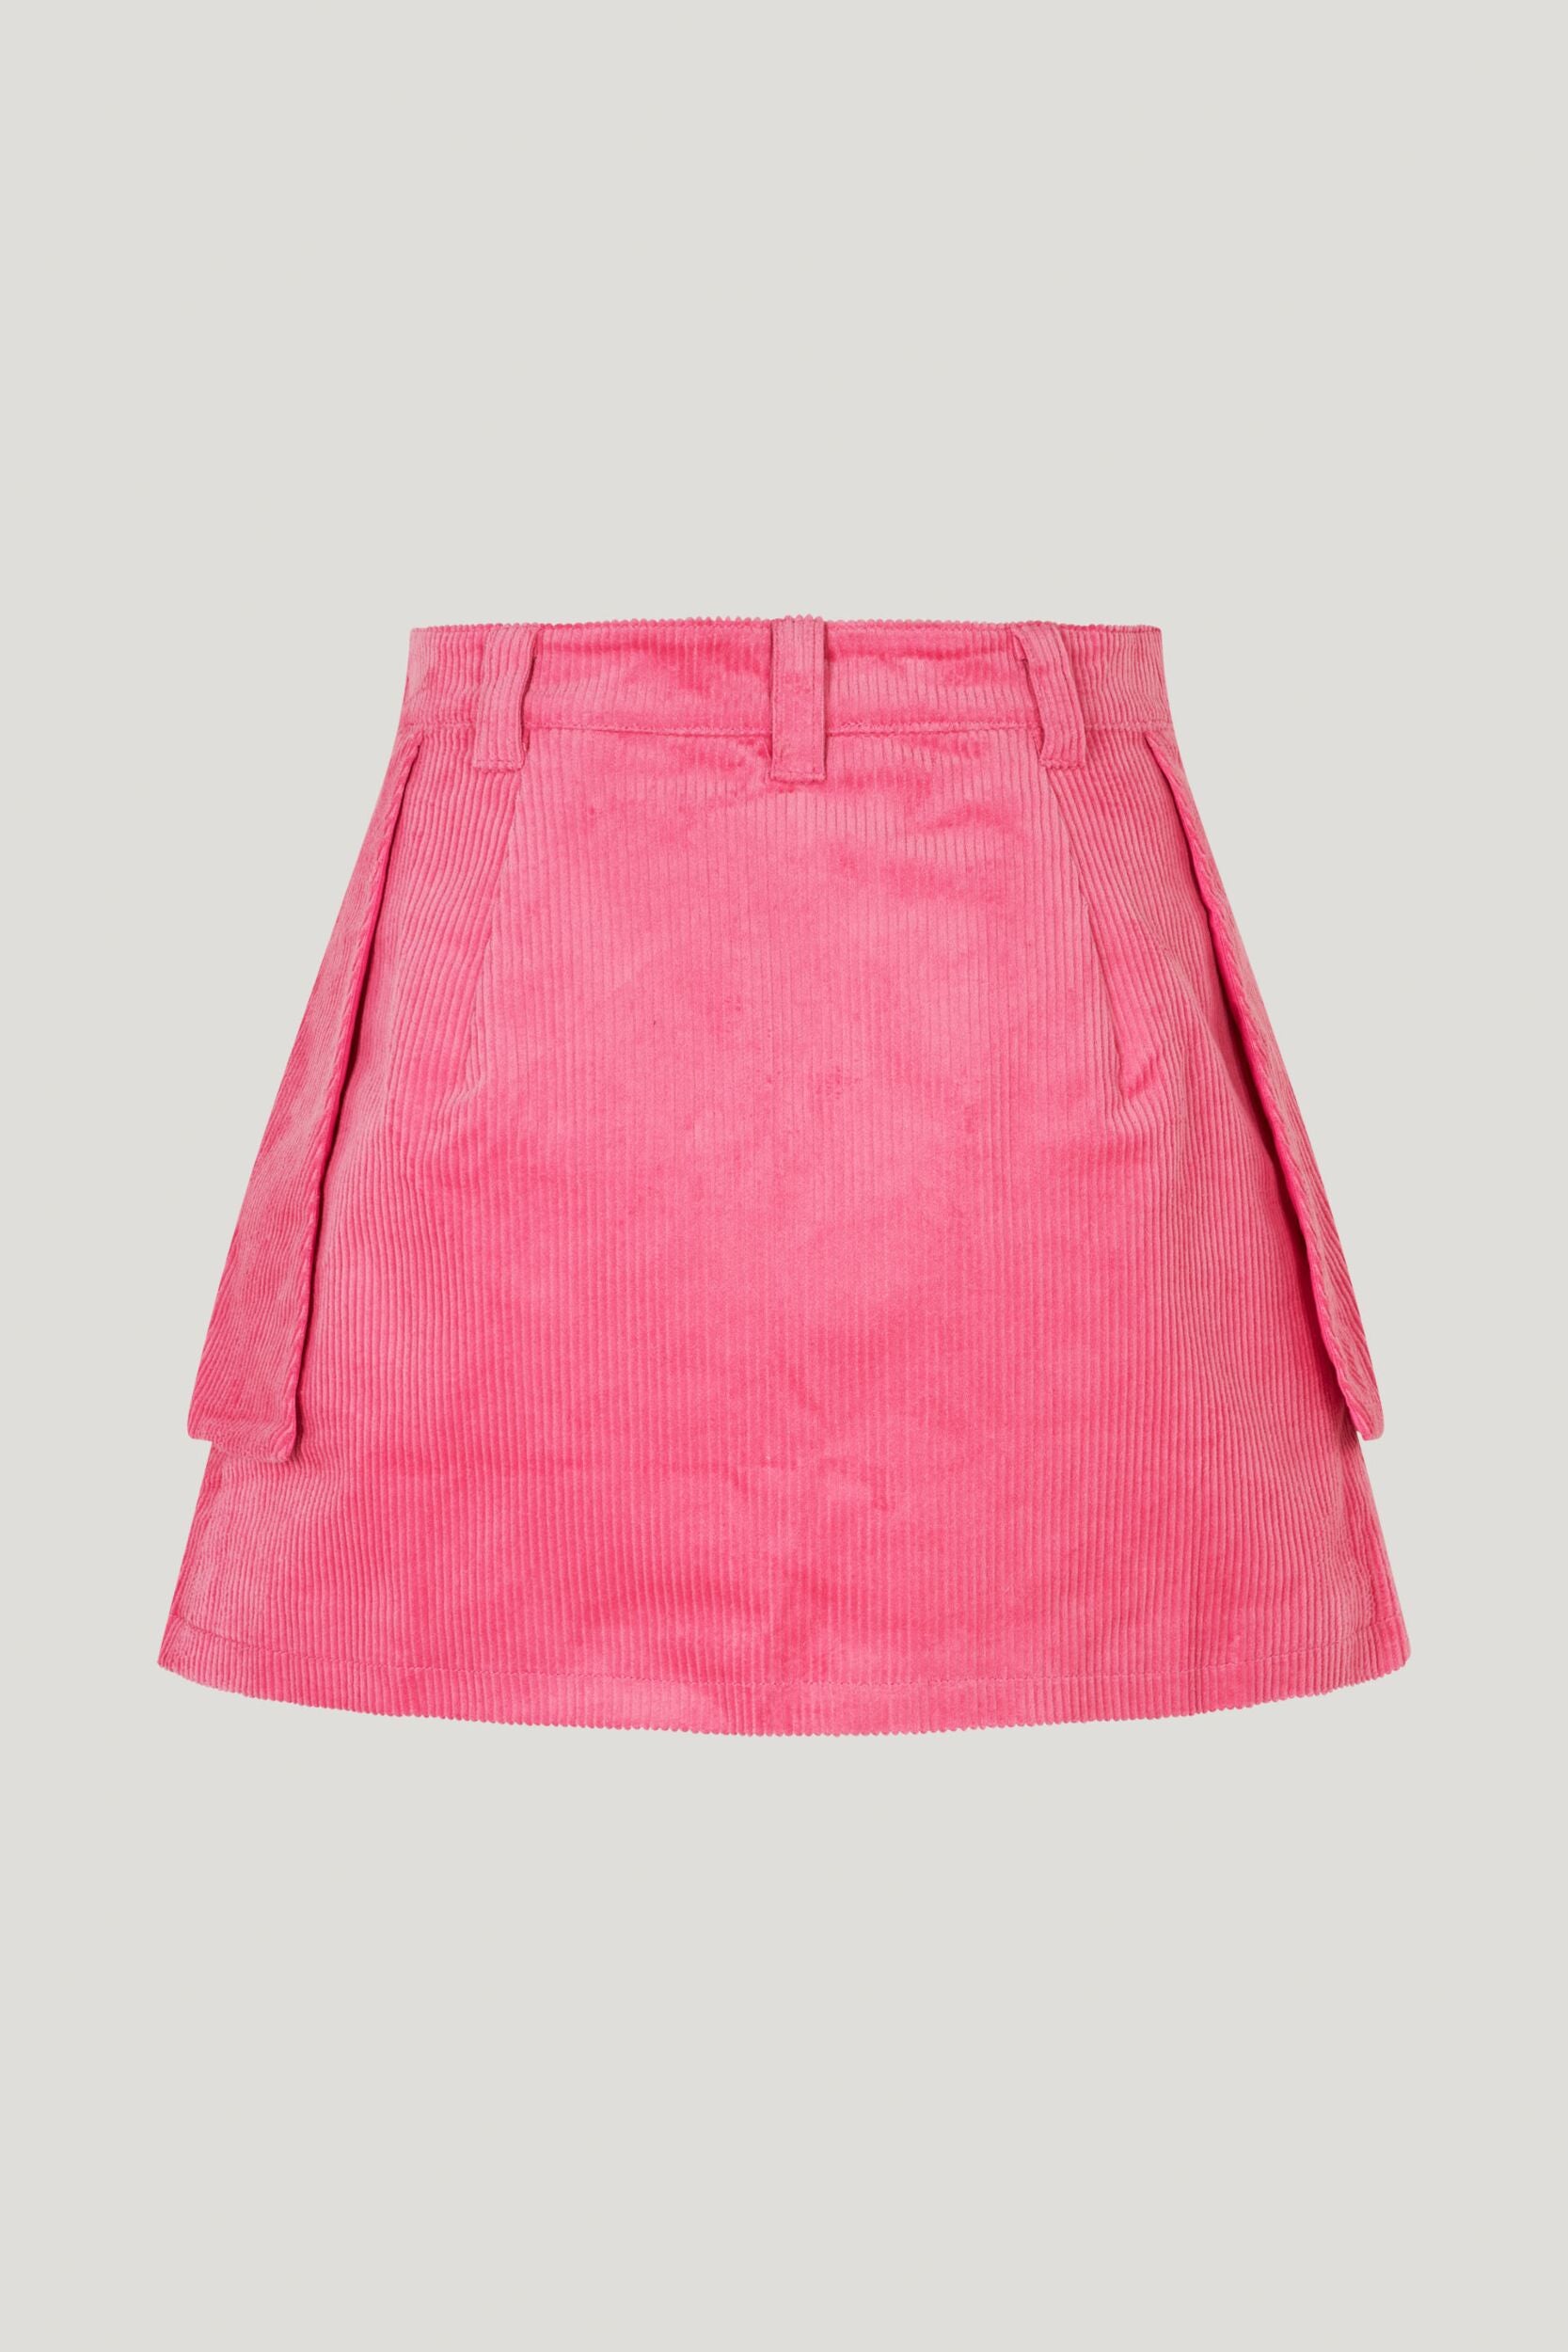 Sakura Cargo Skirt